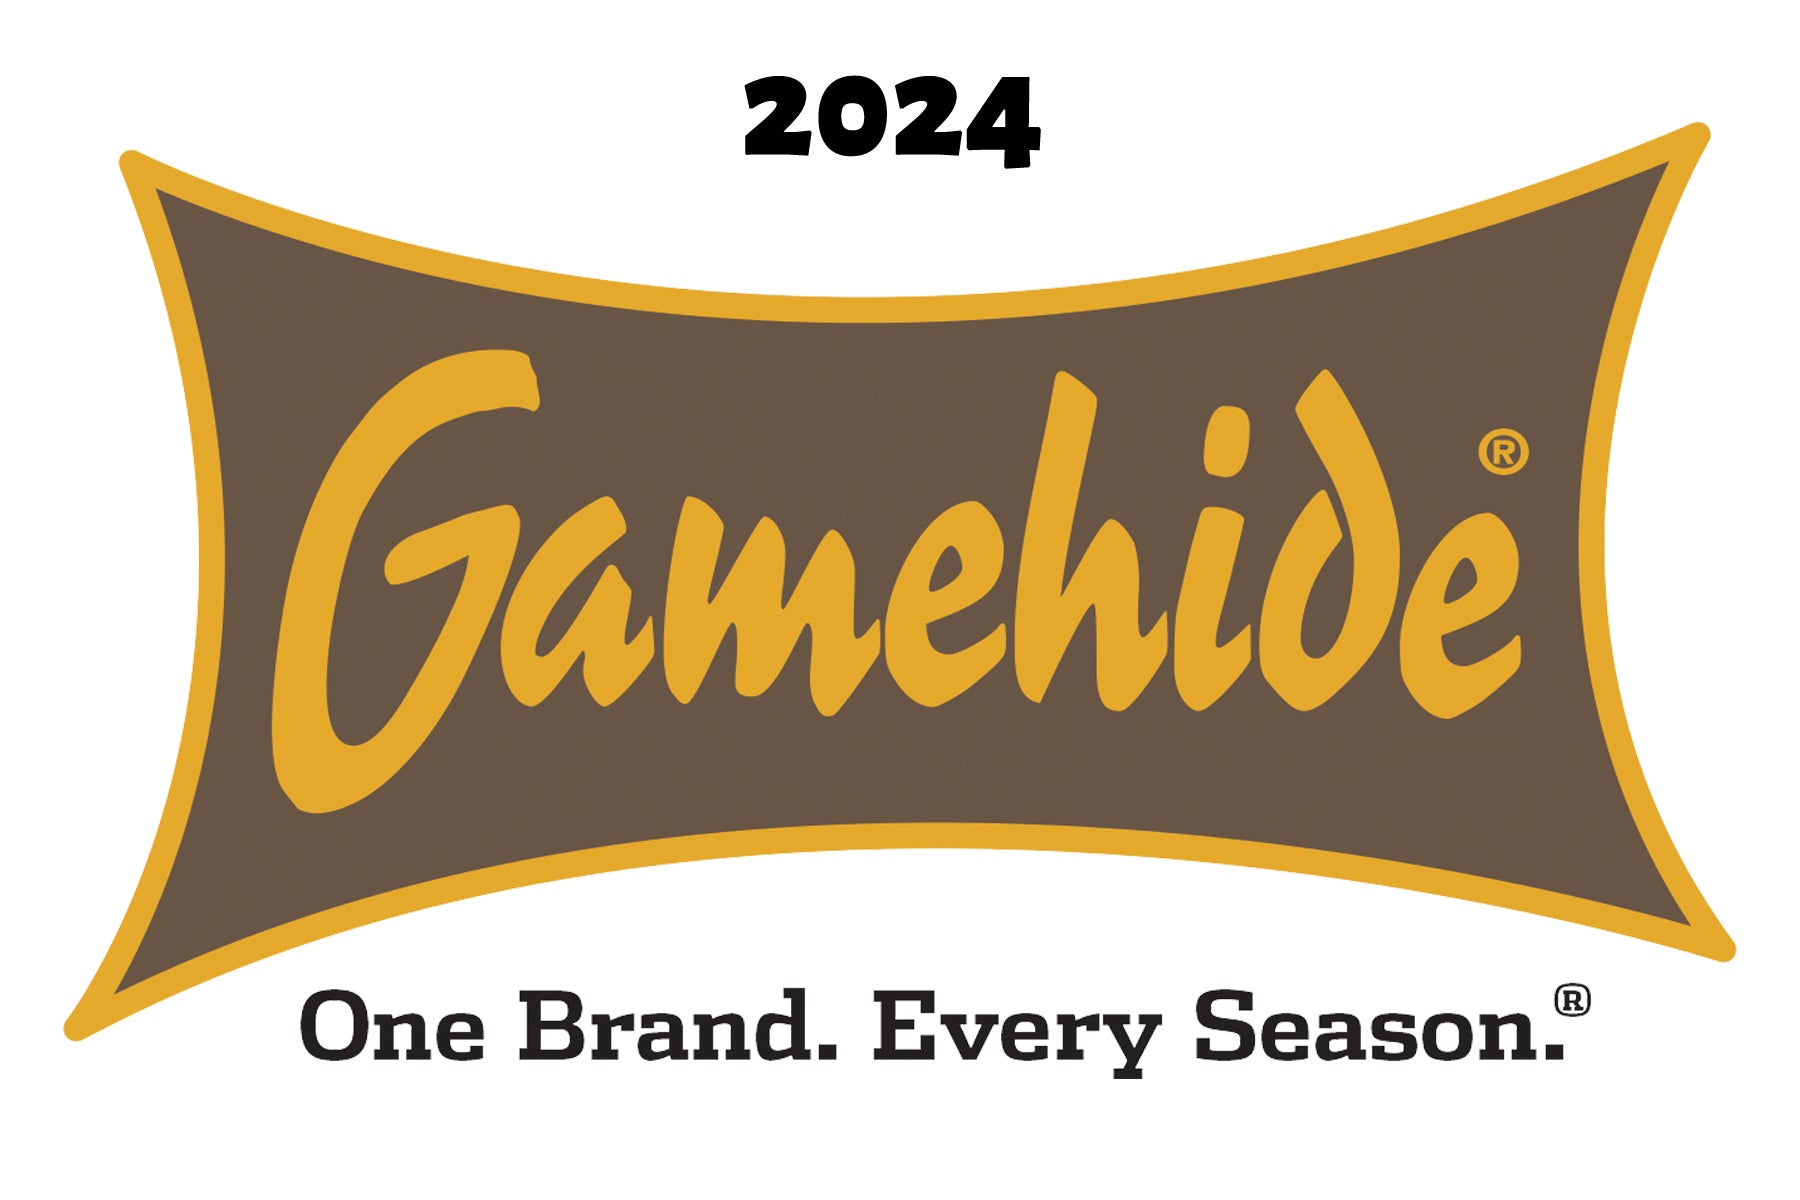 Gamrhide logo 2024